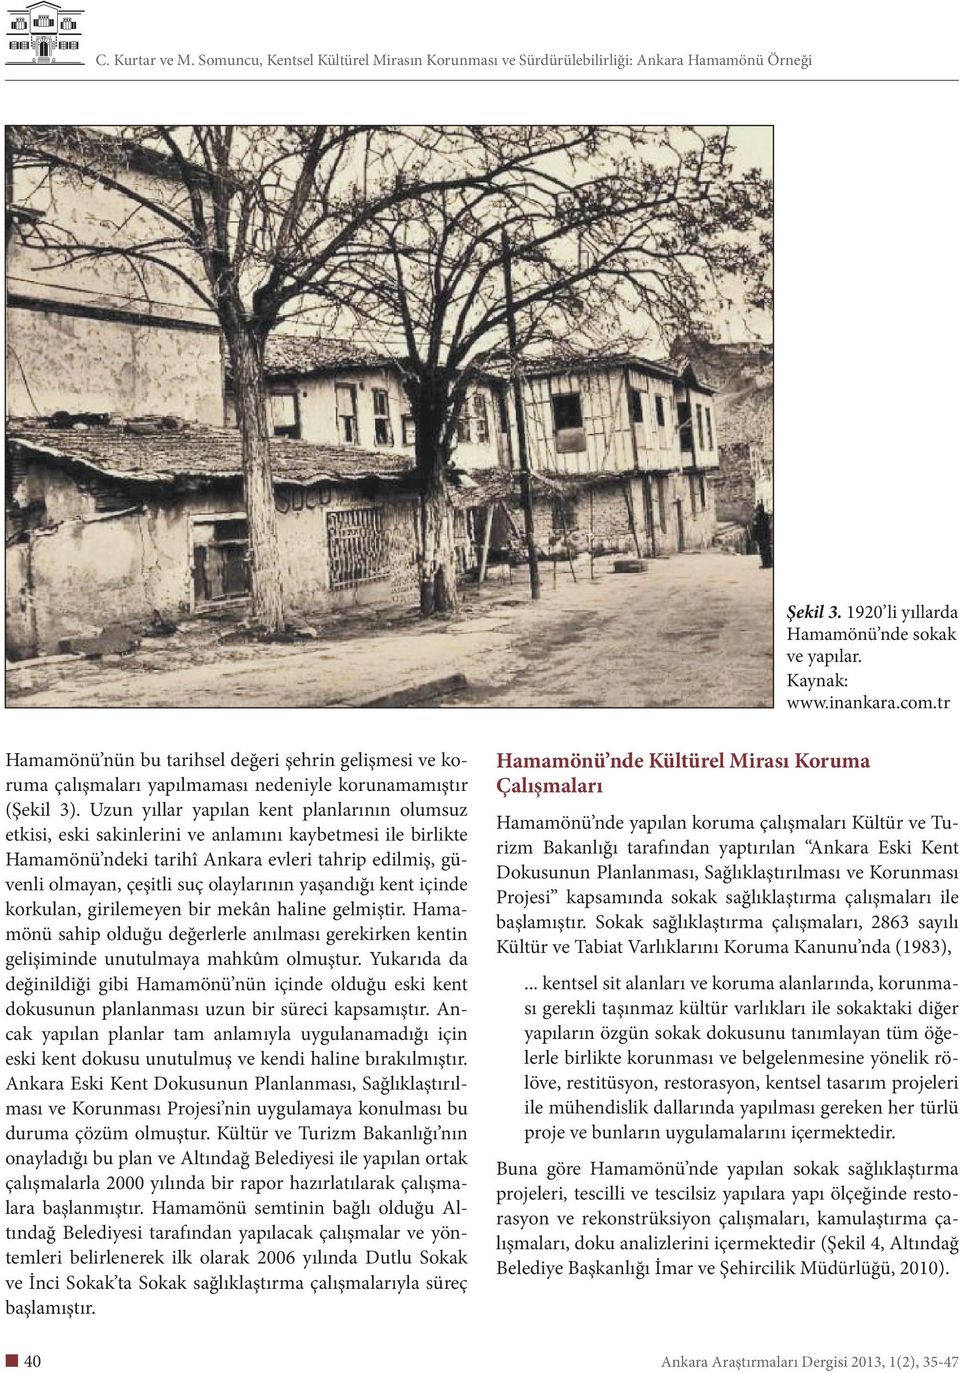 Uzun yıllar yapılan kent planlarının olumsuz etkisi, eski sakinlerini ve anlamını kaybetmesi ile birlikte Hamamönü ndeki tarihî Ankara evleri tahrip edilmiş, güvenli olmayan, çeşitli suç olaylarının